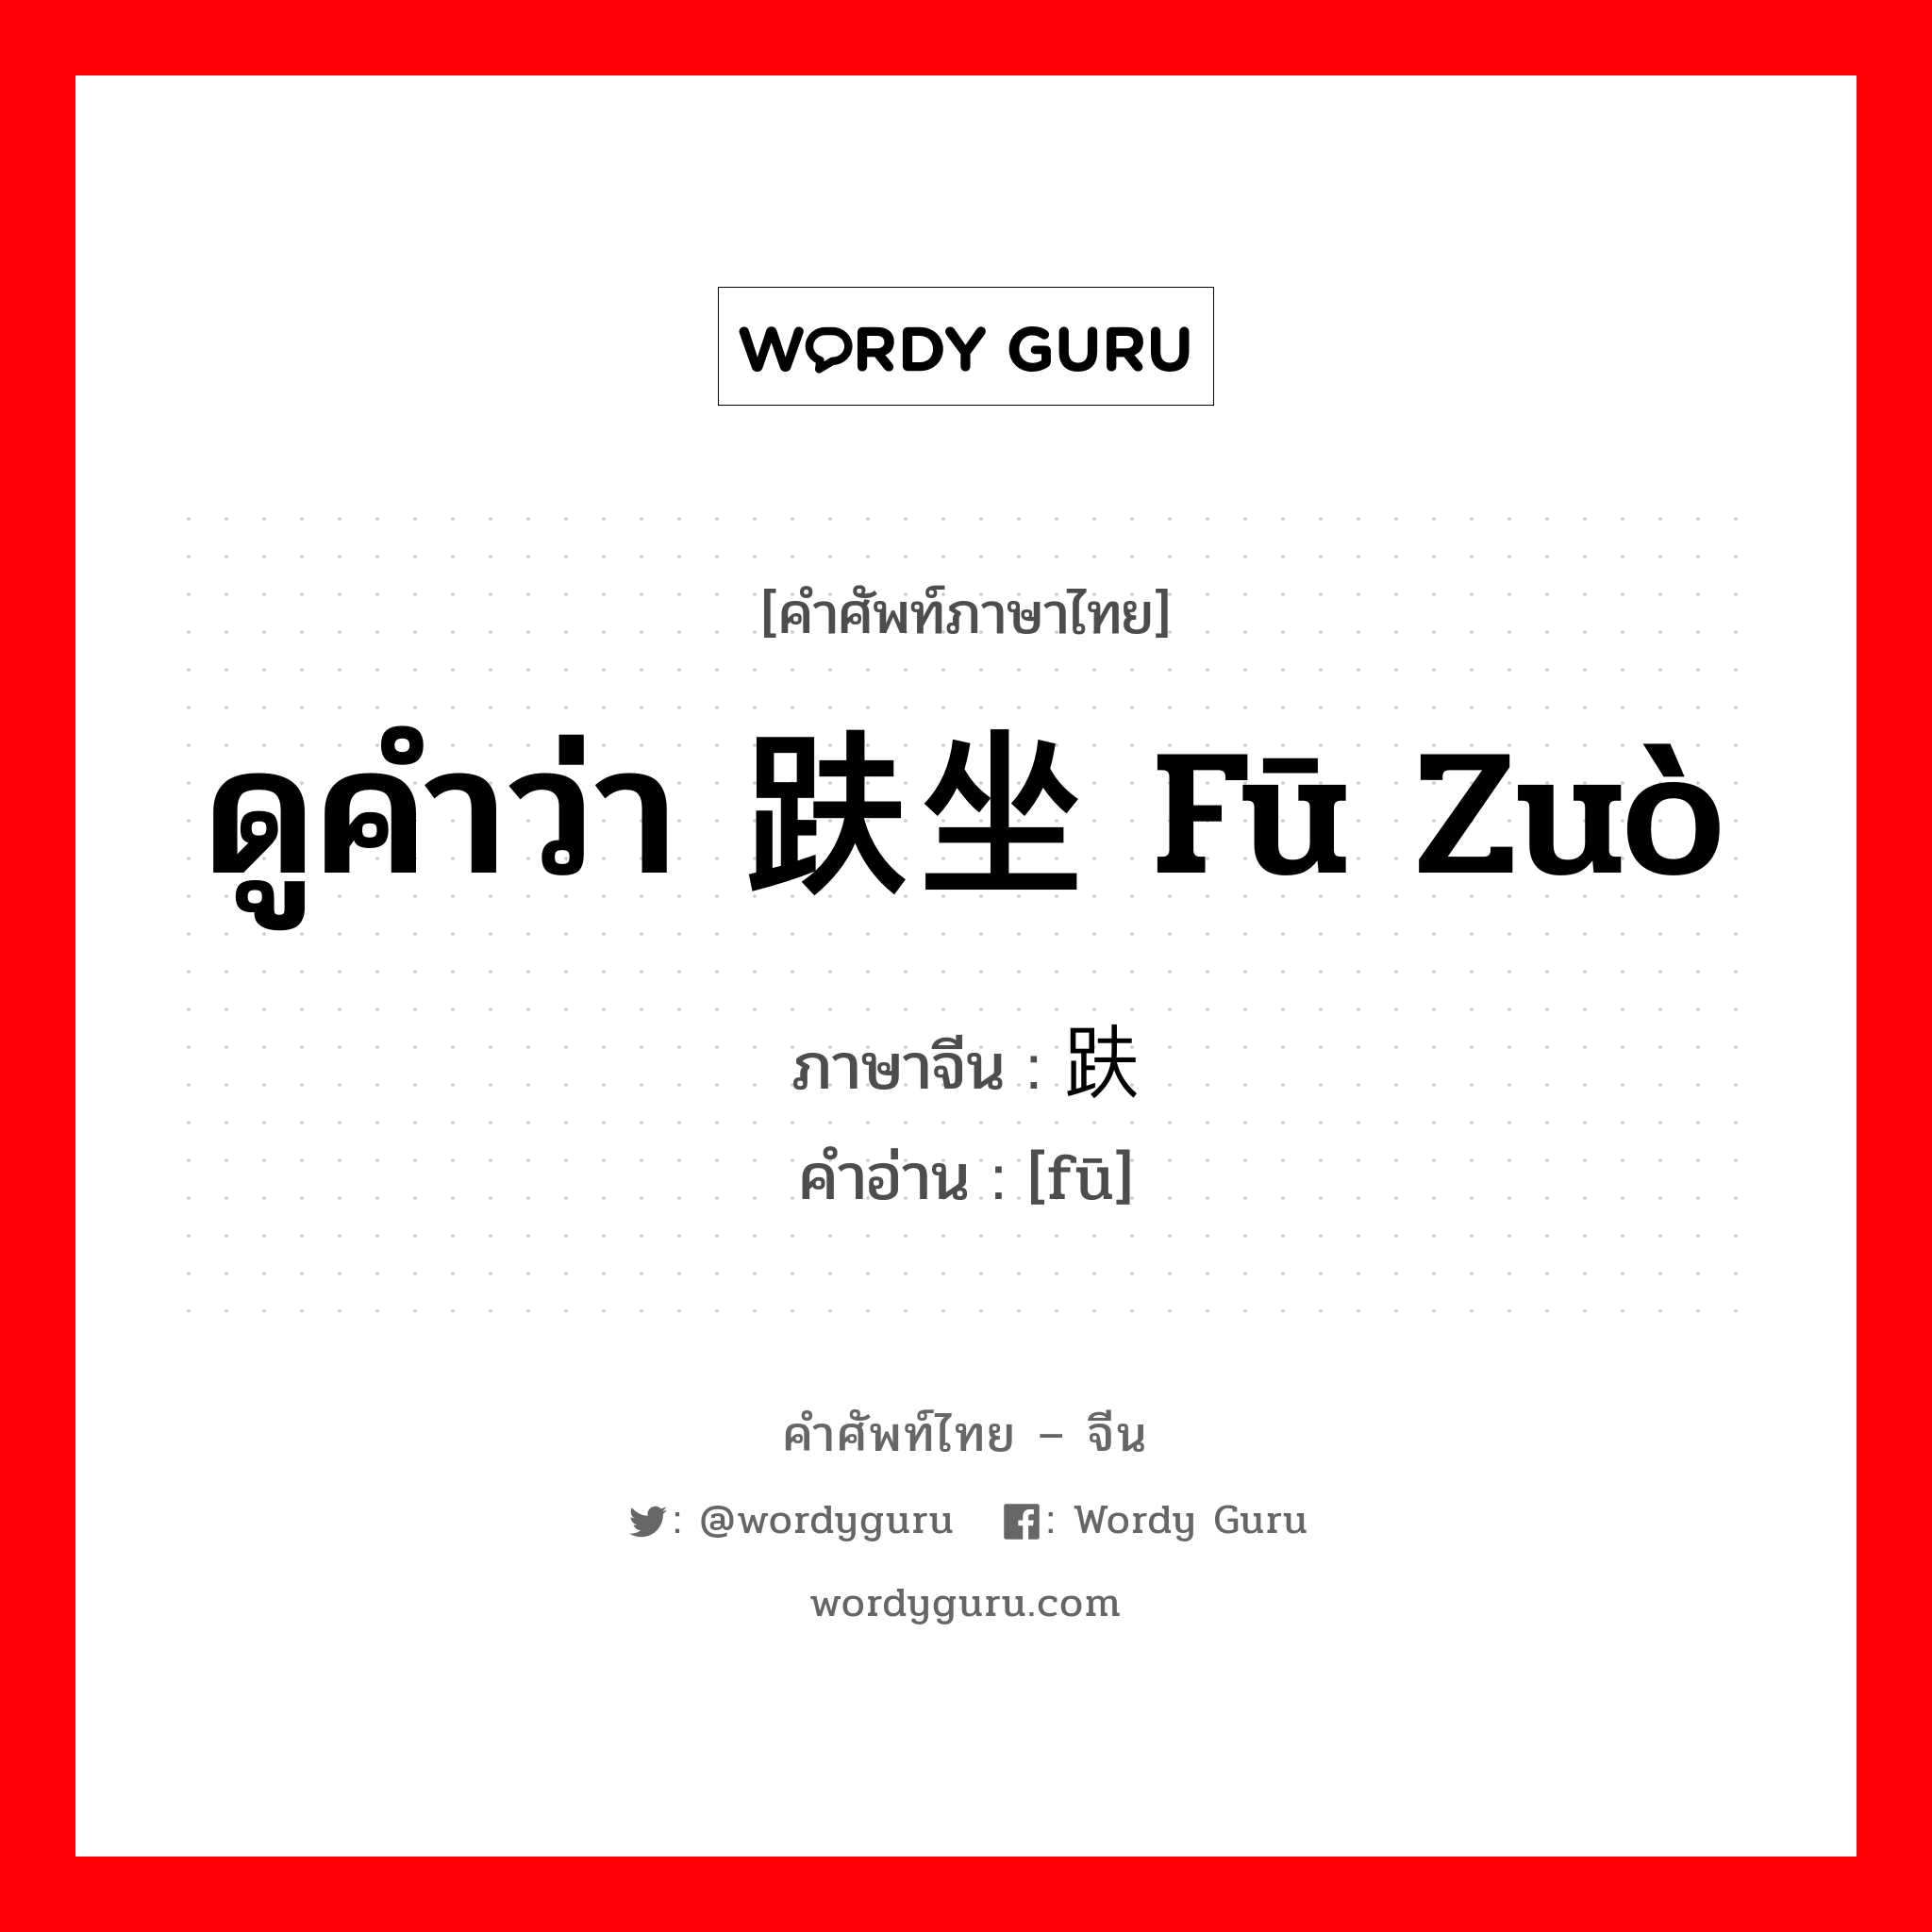 ดูคำว่า 趺坐 fū zuò ภาษาจีนคืออะไร, คำศัพท์ภาษาไทย - จีน ดูคำว่า 趺坐 fū zuò ภาษาจีน 趺 คำอ่าน [fū]